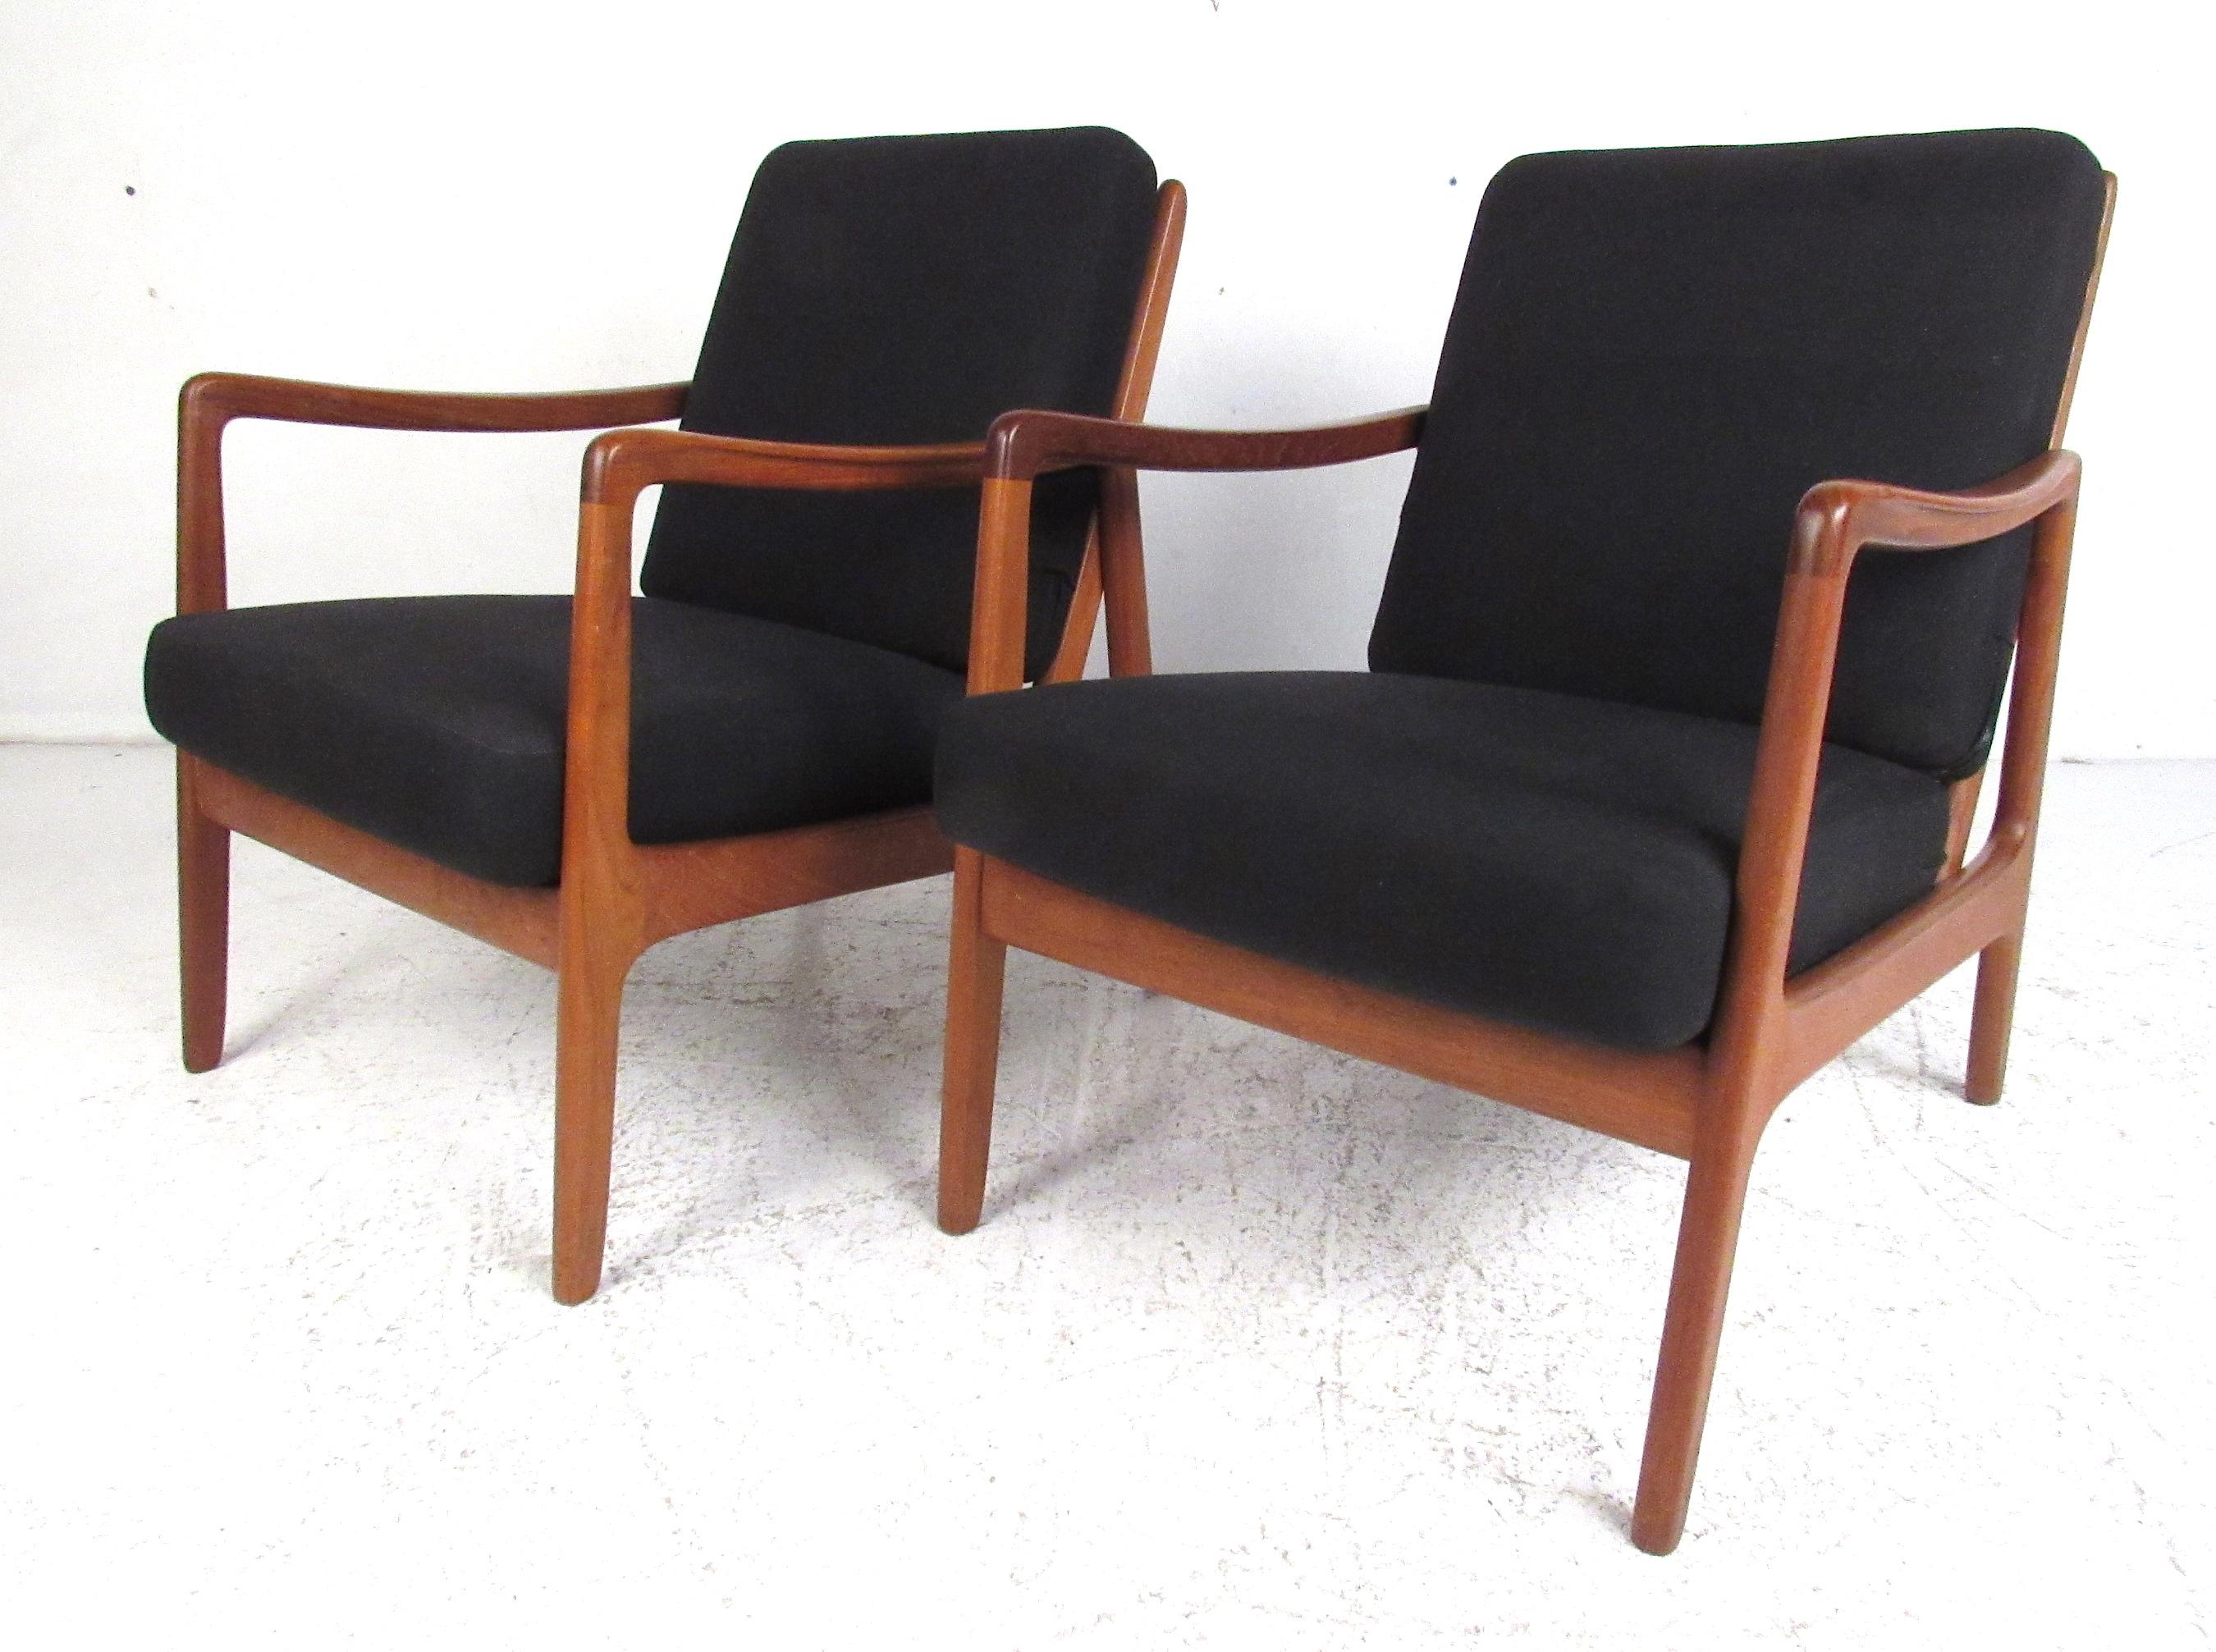 Scandinavian Modern Pair of John Stuart Mid-Century Modern Chairs by Ole Wanscher